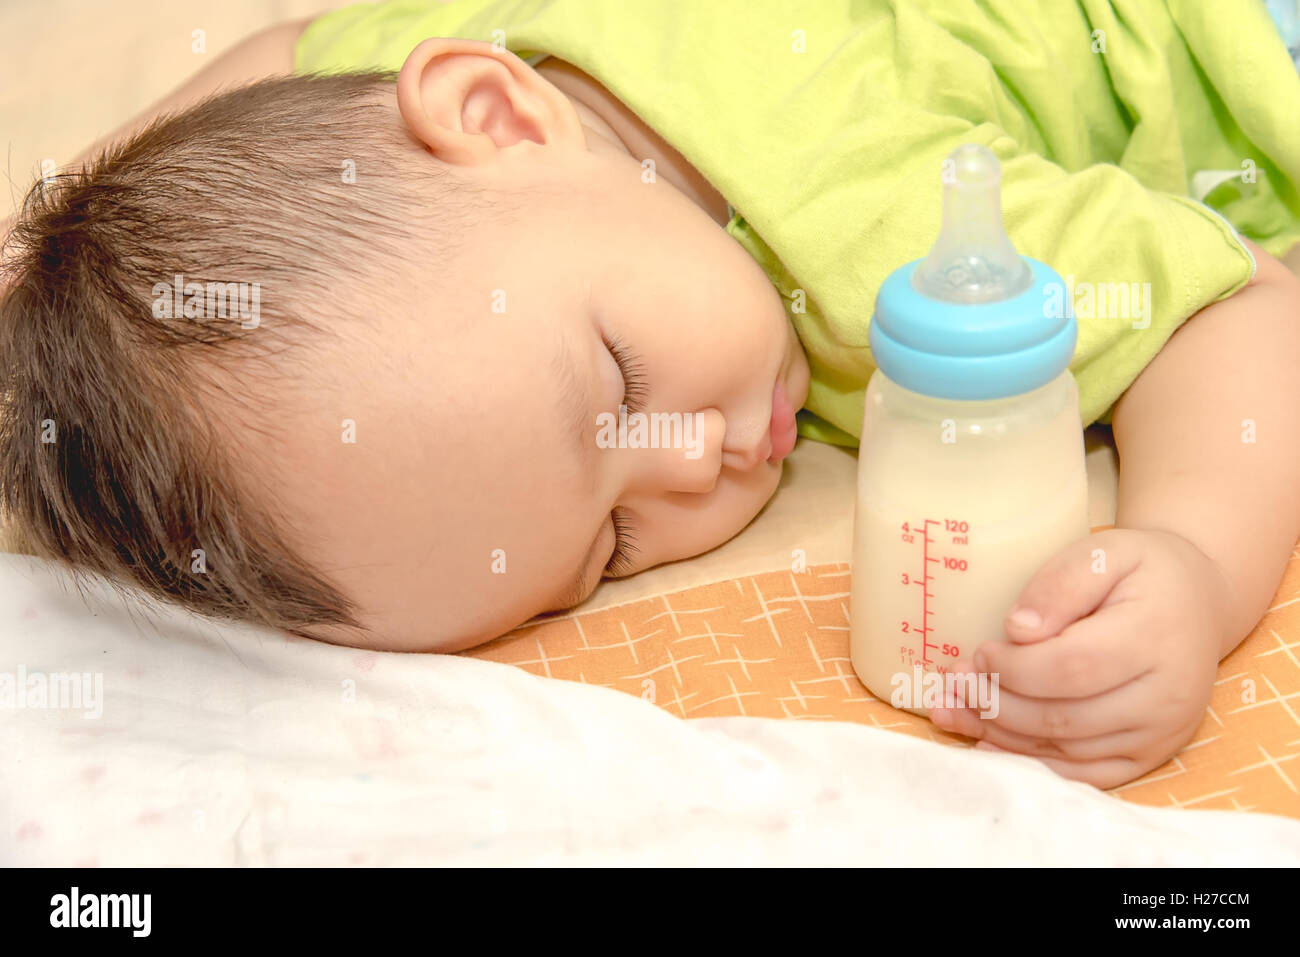 Sommeil Bébé asiatique dans sa main holding baby bouteille de lait Banque D'Images